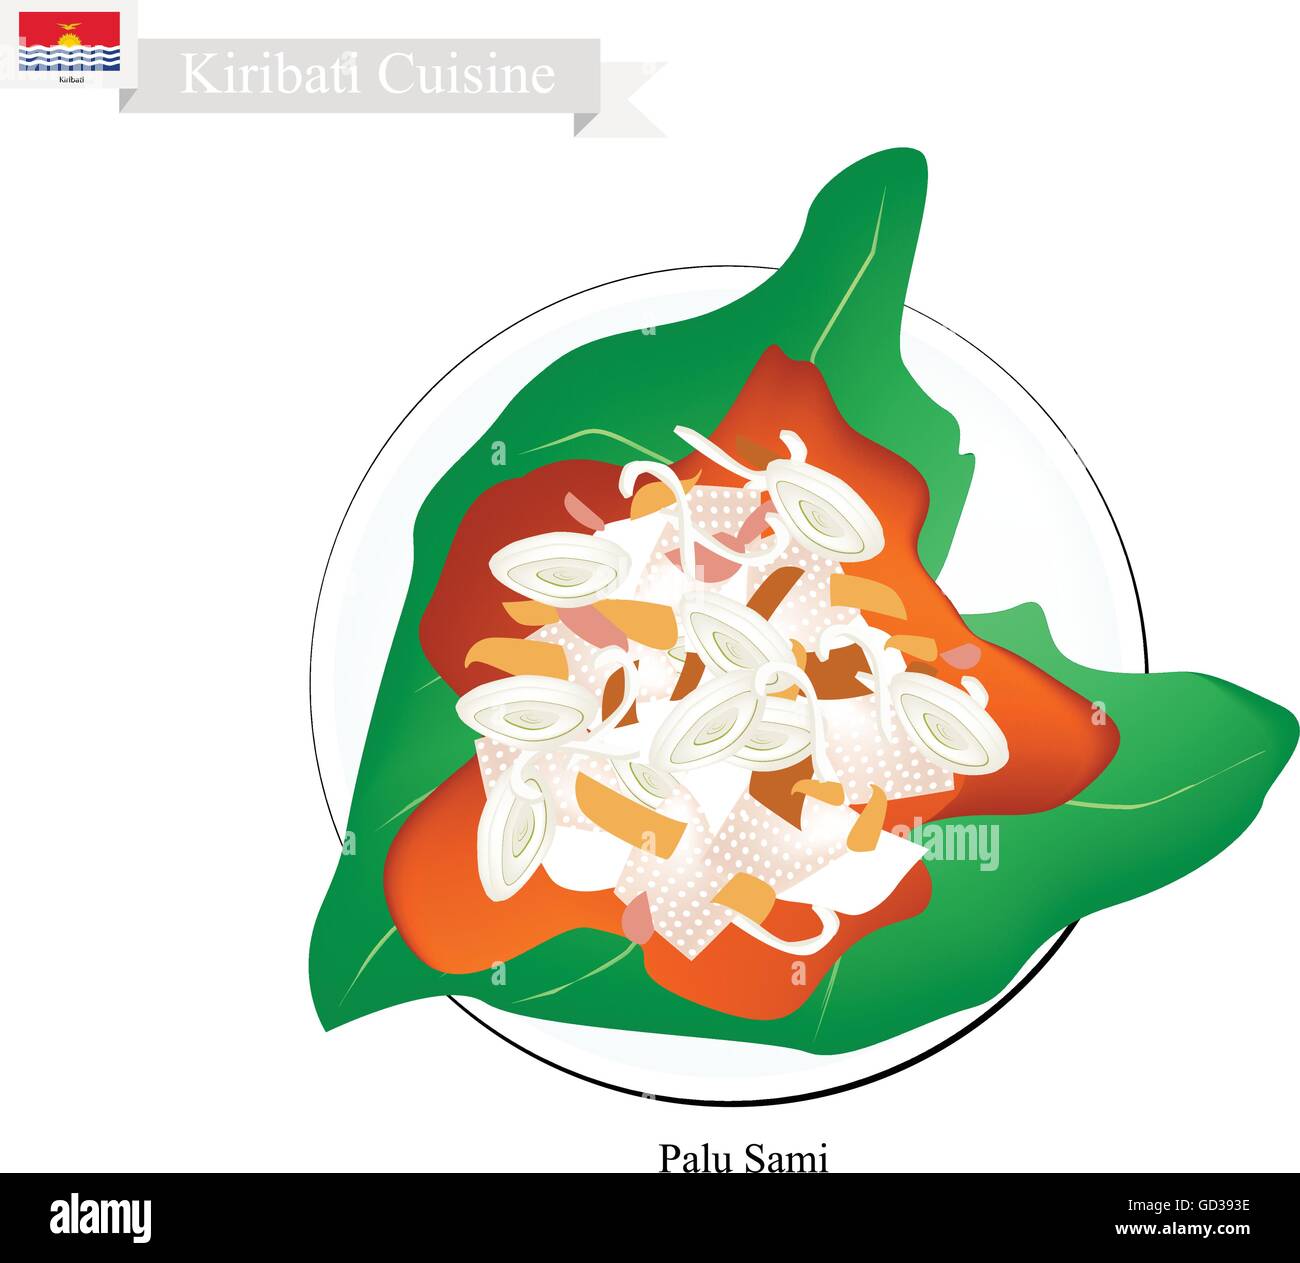 Cucina di Kiribati, illustrazione di Palu Sami tradizionali o di carne di maiale o di pollo, crema di noce di cocco, la cipolla e il curry in polvere avvolto in tar Illustrazione Vettoriale